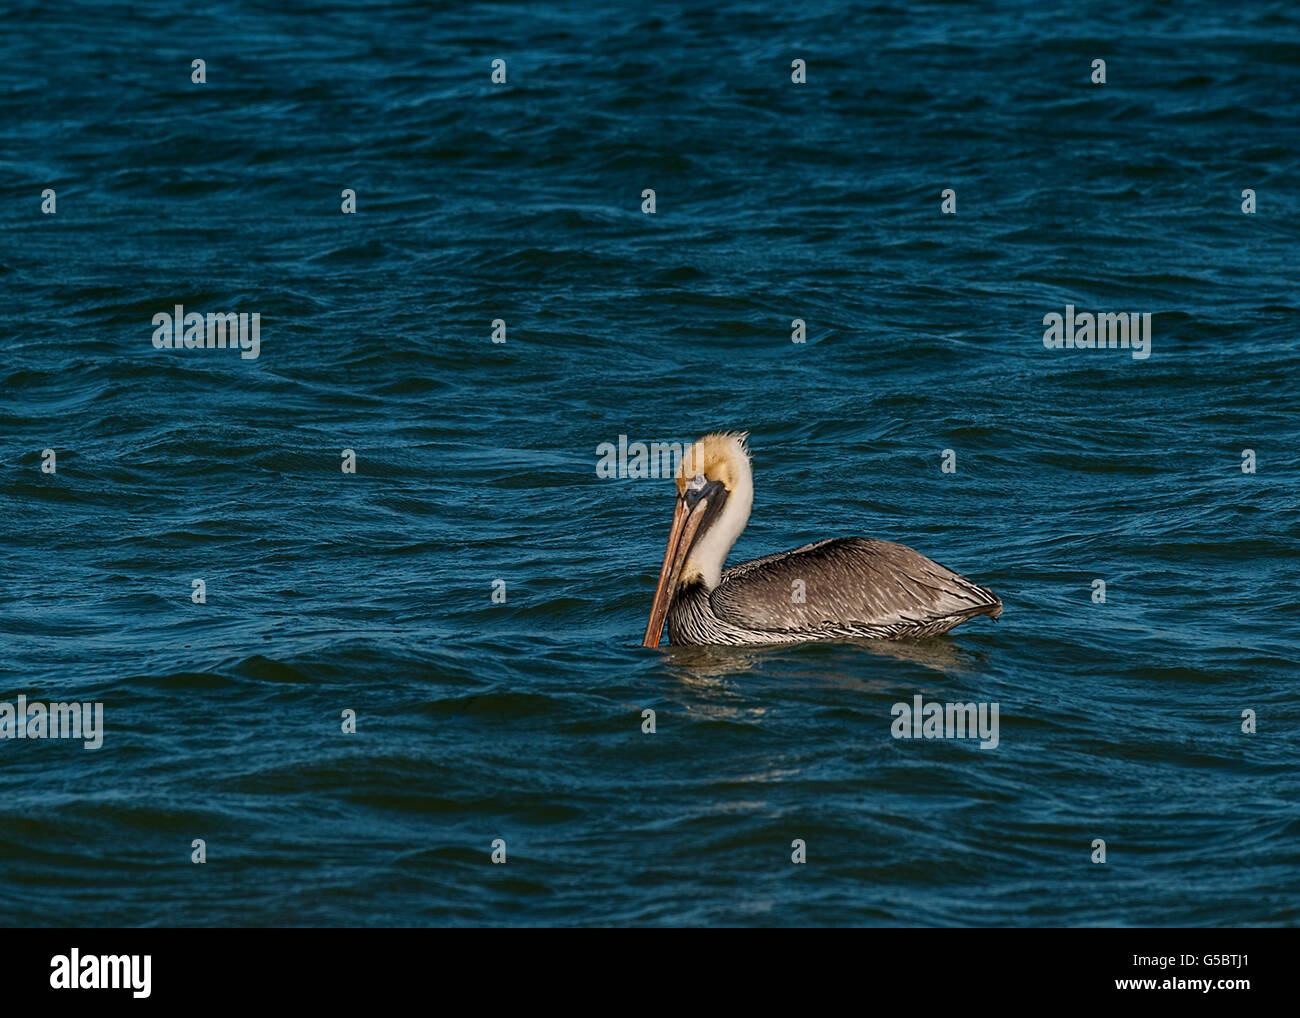 Pelican natation avec bec dans l'eau Banque D'Images